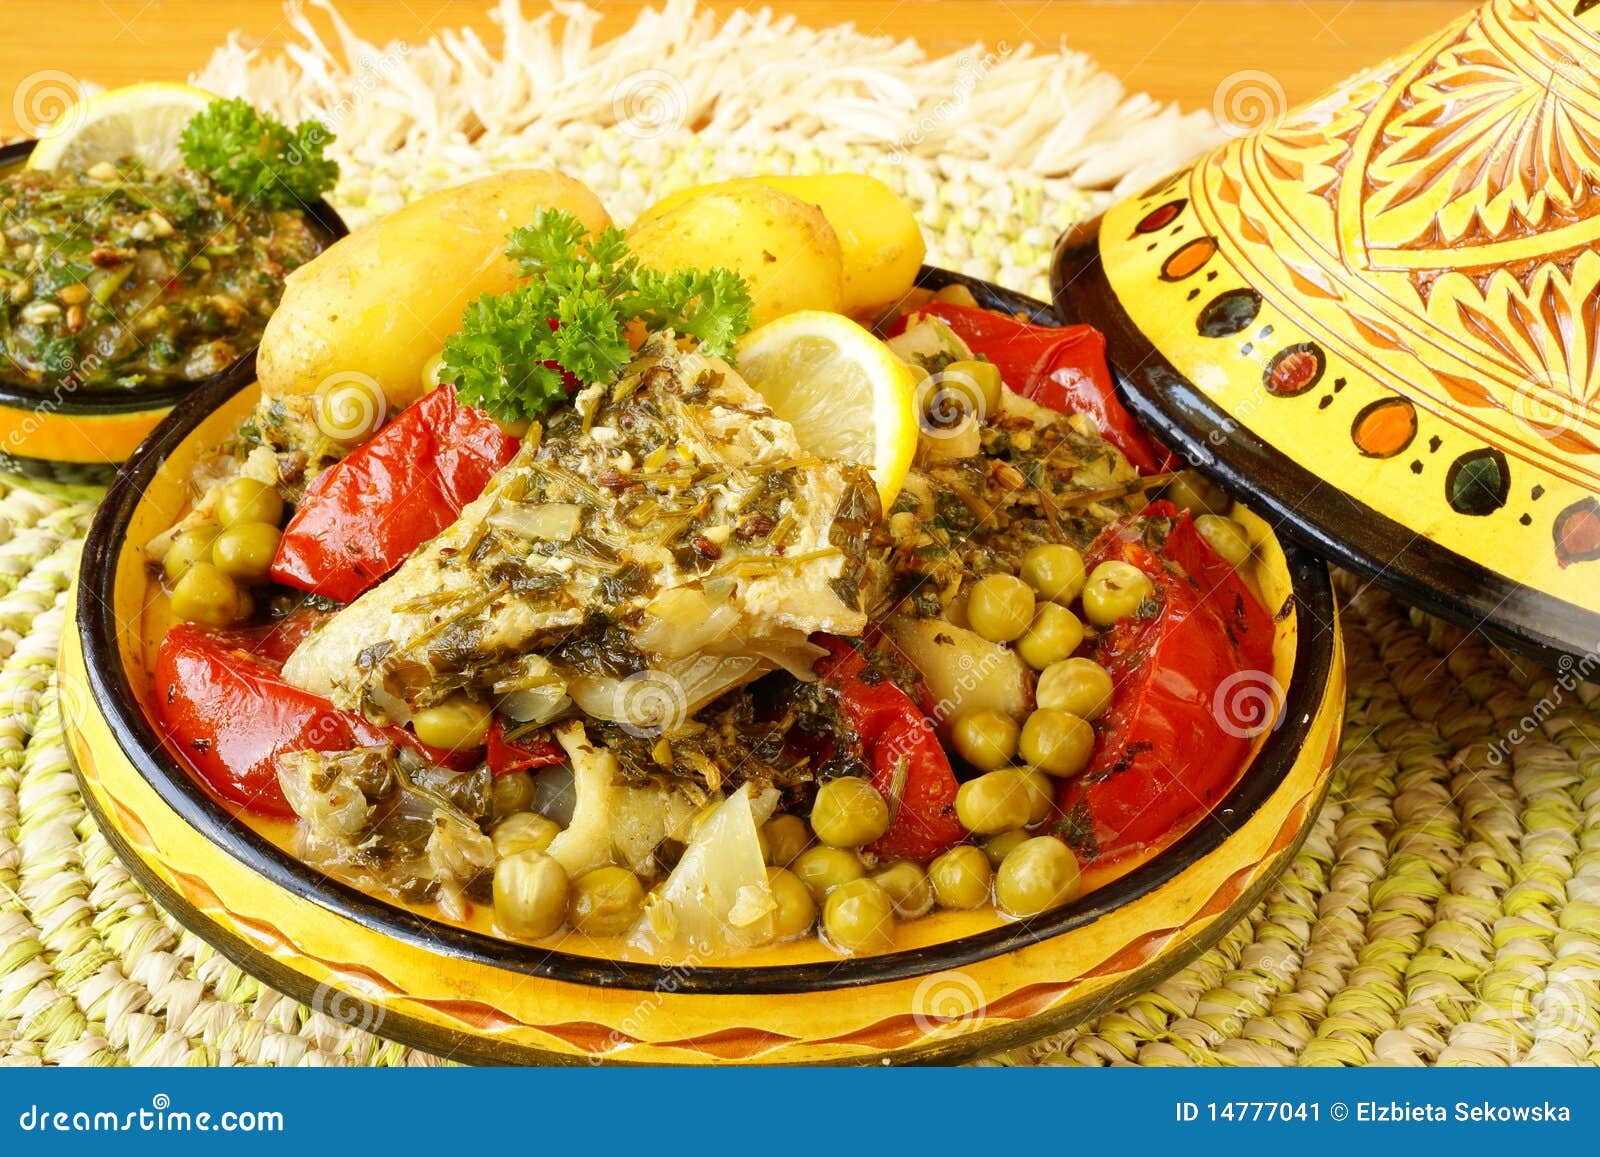 摩洛哥食物 传统tajine盘、蒸丸子和新鲜的沙拉 库存照片. 图片 包括有 正餐, 背包, 马格里布 - 142289474